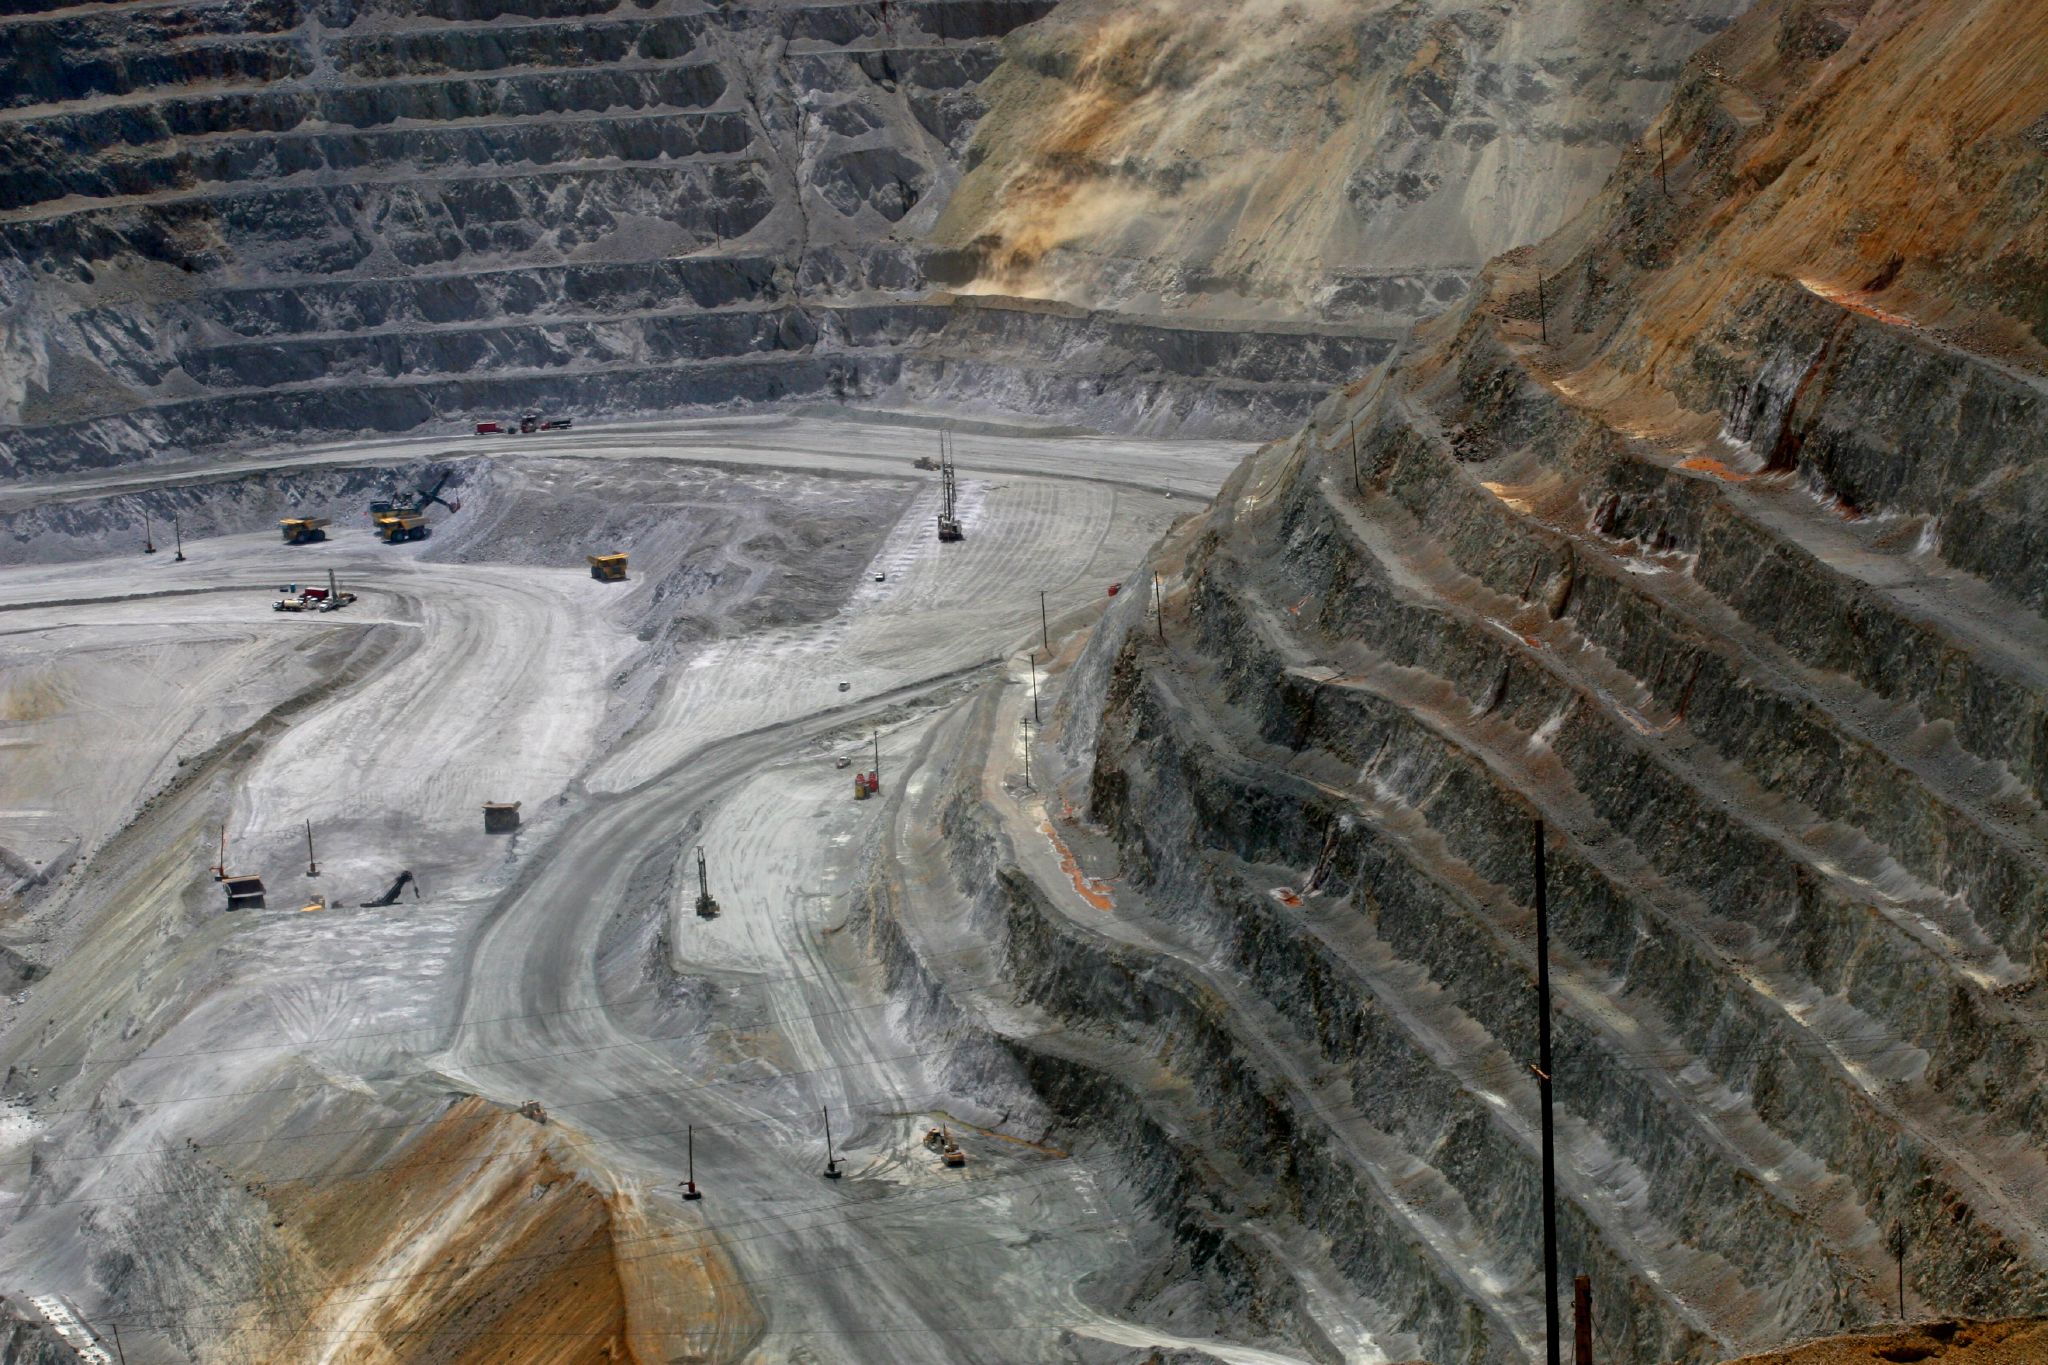 Mining operations at Bingham Canyon Mine, Utah, 2009. Credit: Arbyreed. License: CC BY-NC-SA 2.0